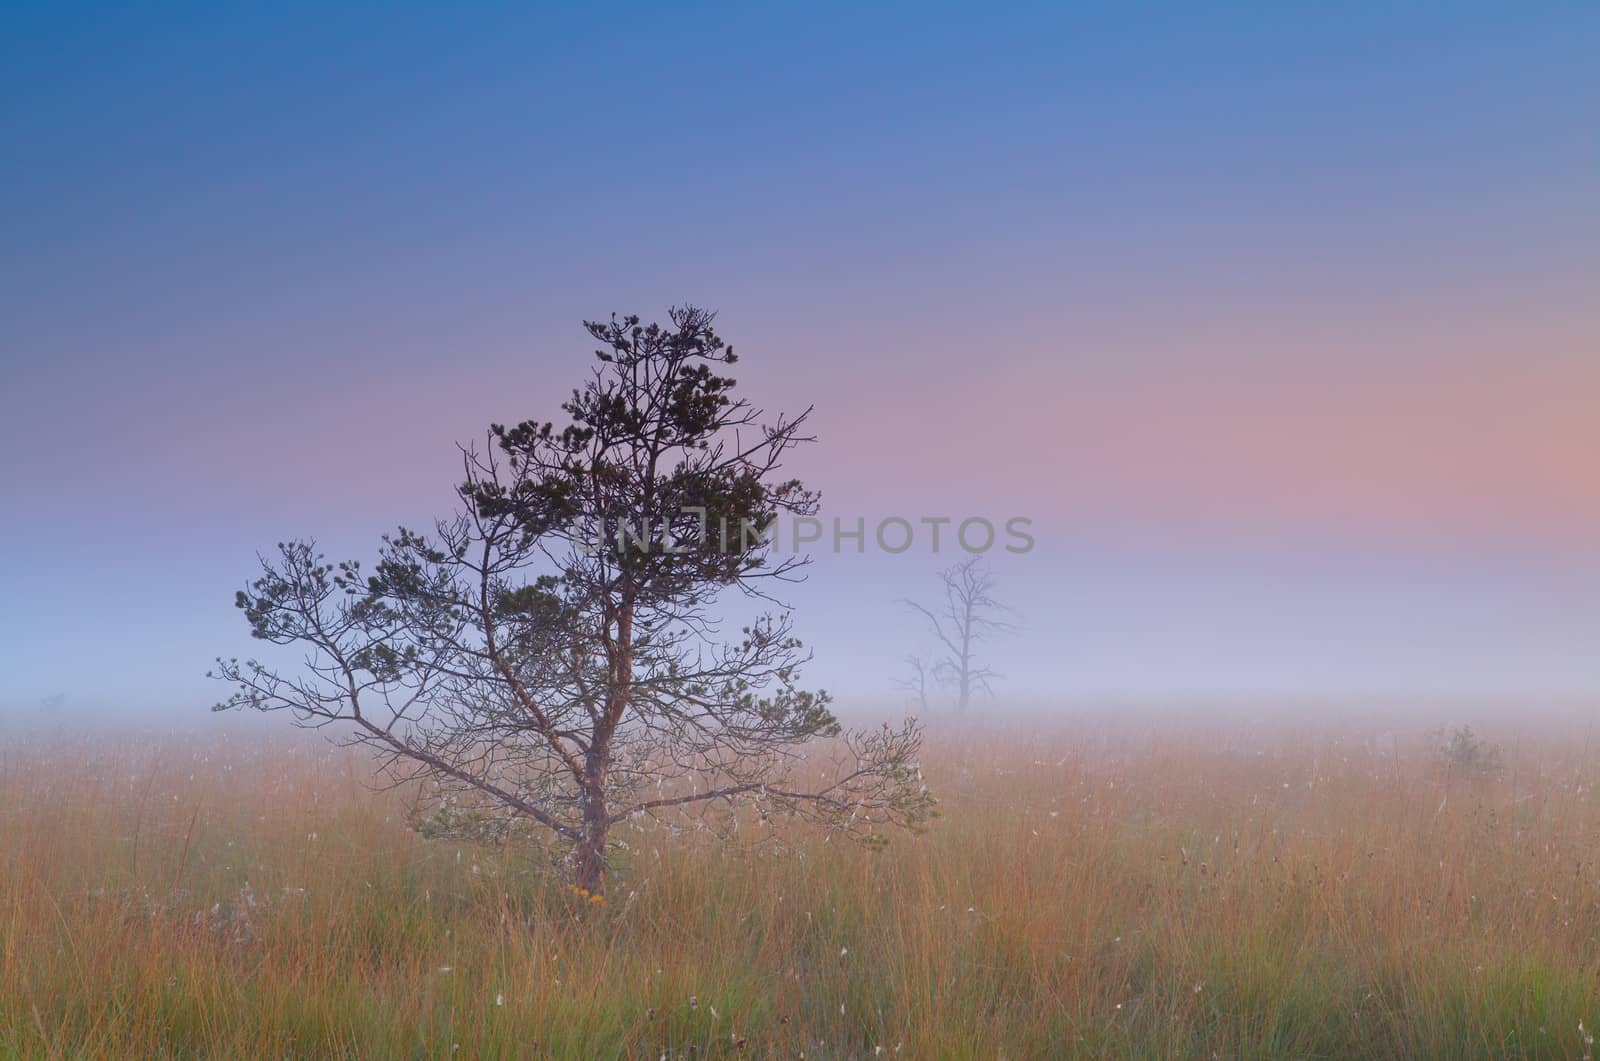 pine tree in dense fog at sunrise, Fochteloerveen, Drenthe, Netherlands